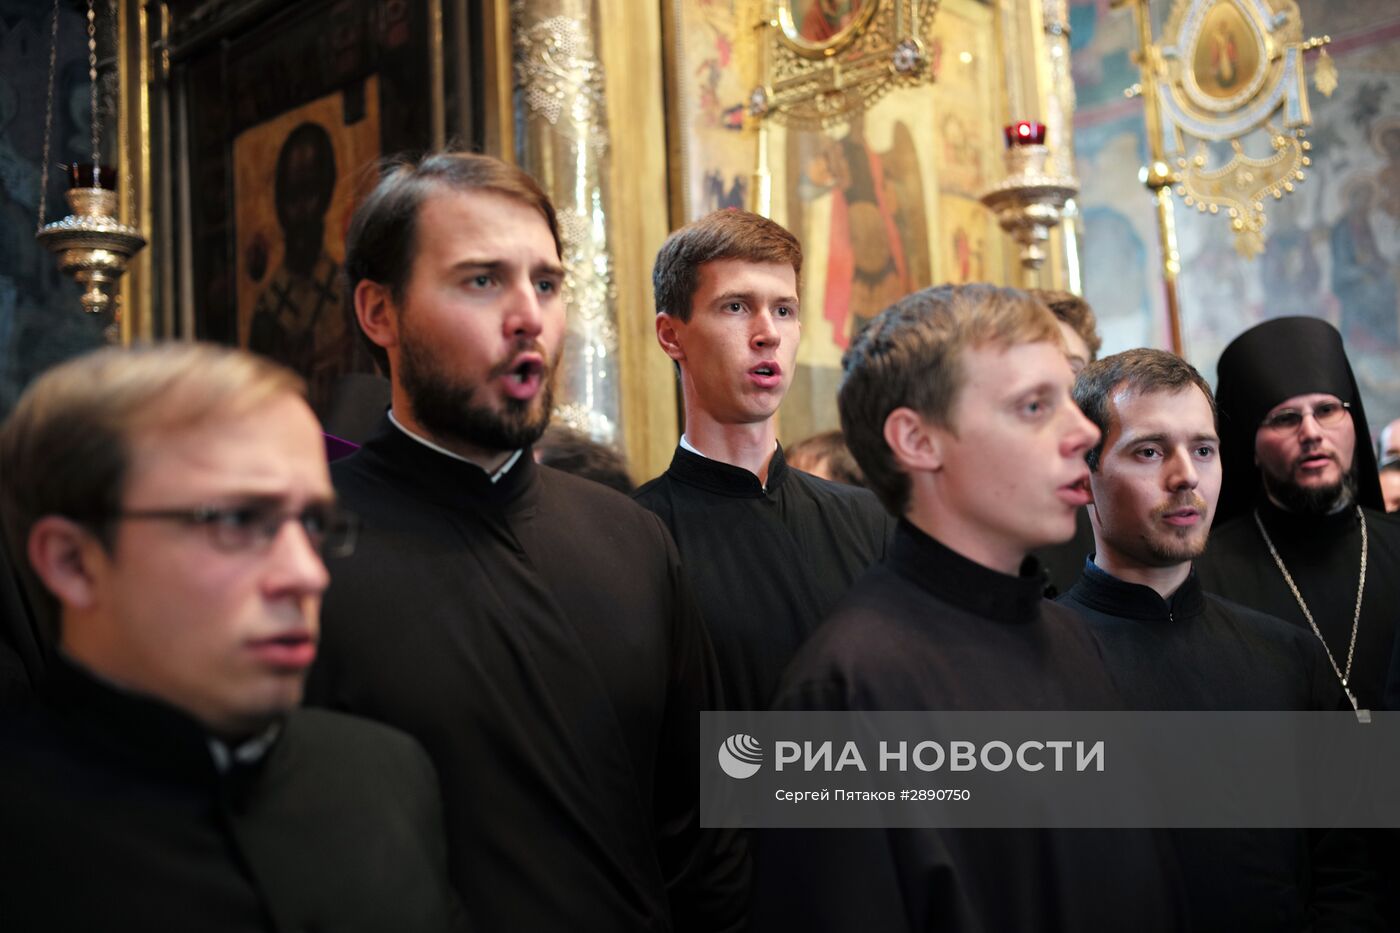 Выпускной акт семинаристов Московской духовной академии